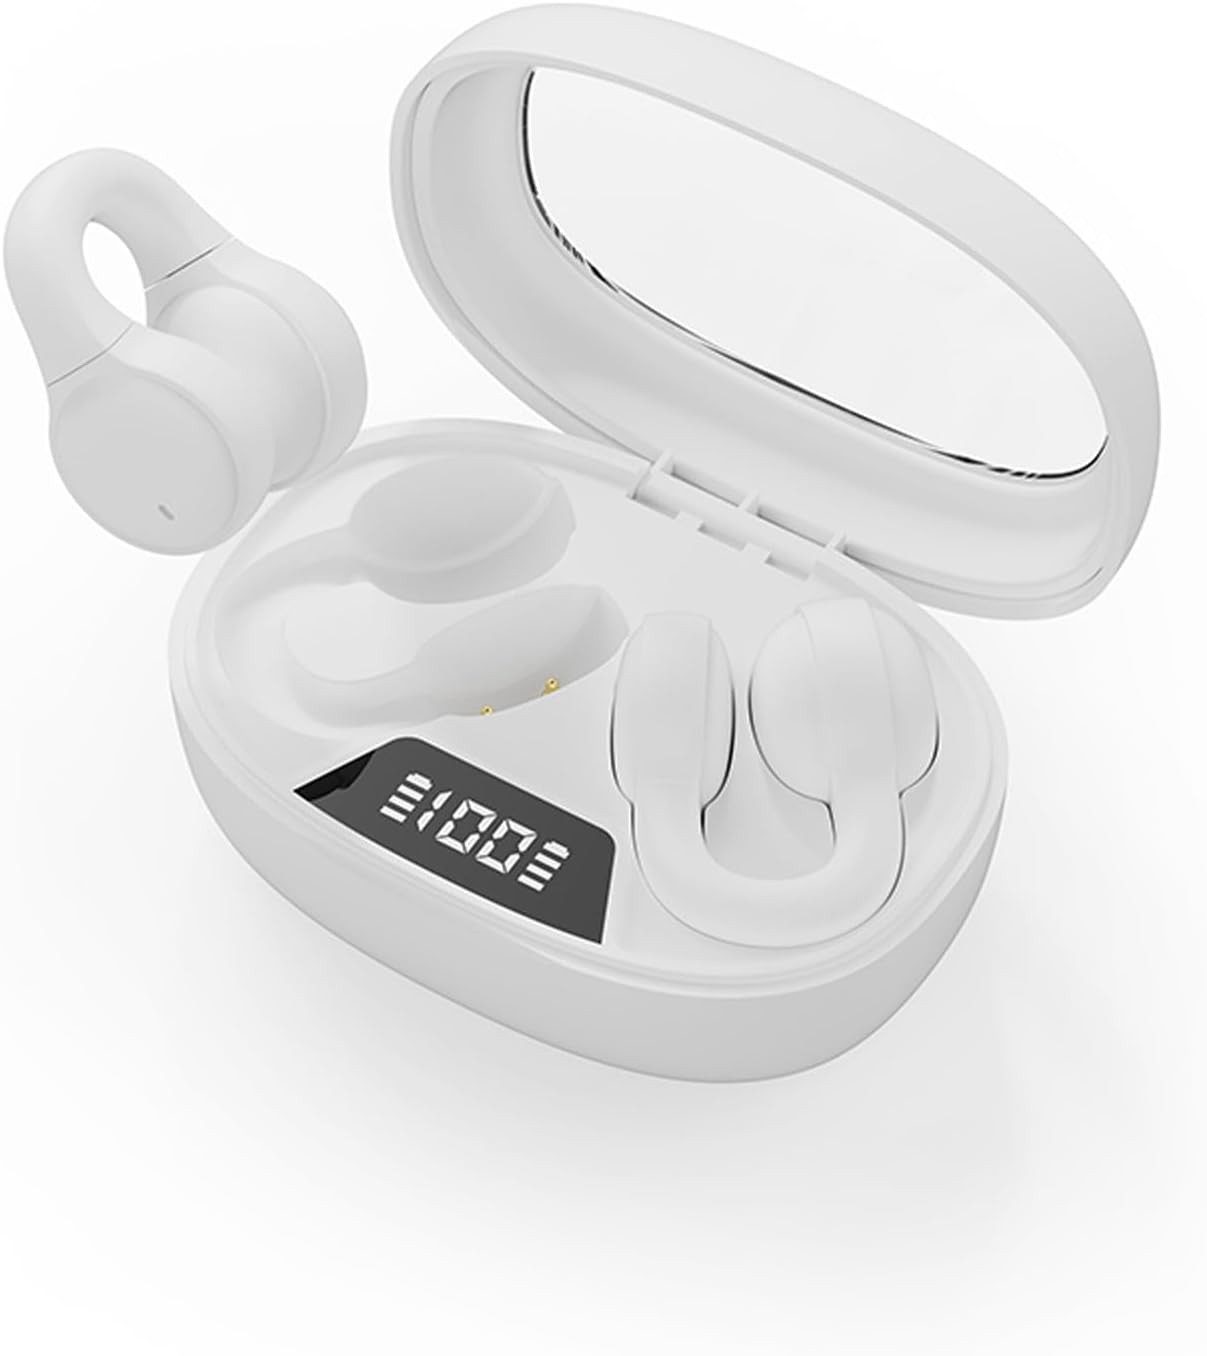 Xmenha HiFi-Stereoklang & klare Anrufe Open-Ear-Kopfhörer (LED-Leistungsanzeige & Touch-Steuerung: Intelligente LED-Anzeige zeigt Akkustand, Touch-Steuerung für Musik, Anrufe und mehr., Offenes-Ohr-Design, Komfort, HiFi-Sound, lange Akkulaufzeit, Steuerung)